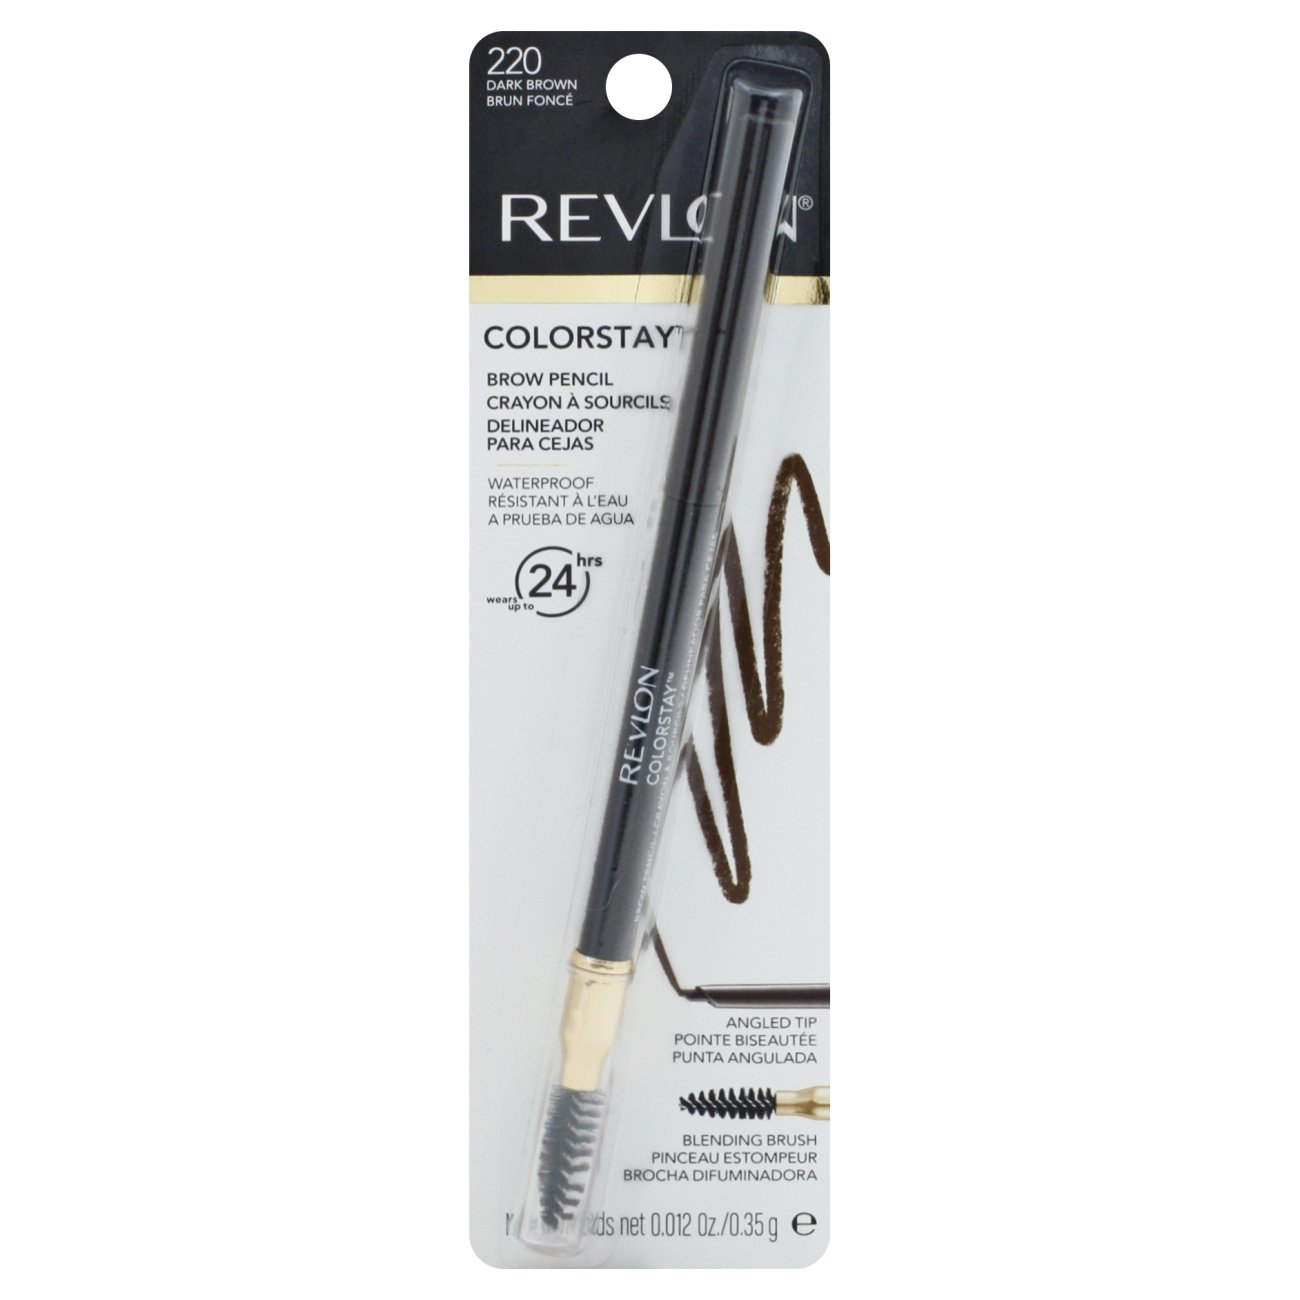 Revlon ColorStay Brow Pencil, 220 Dark Brown - Shop Brow Pencils